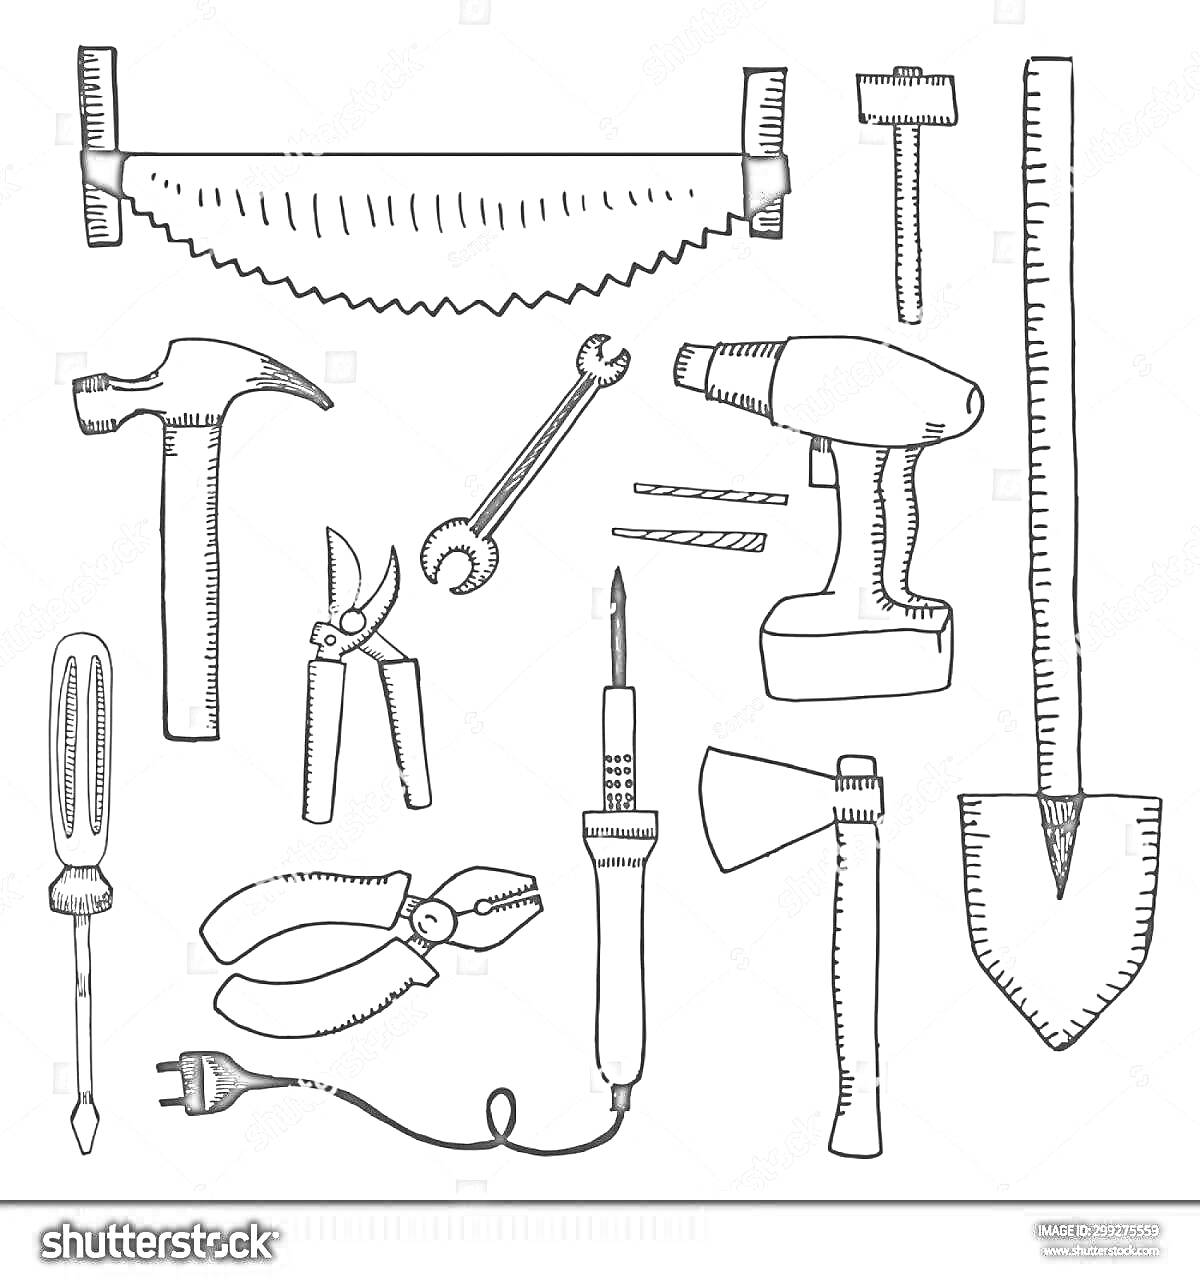 Раскраска Пила, молоток, ножницы, гаечный ключ, дрель, лопатка, отвертка, плоскогубцы, электролобзик, топор, сверло